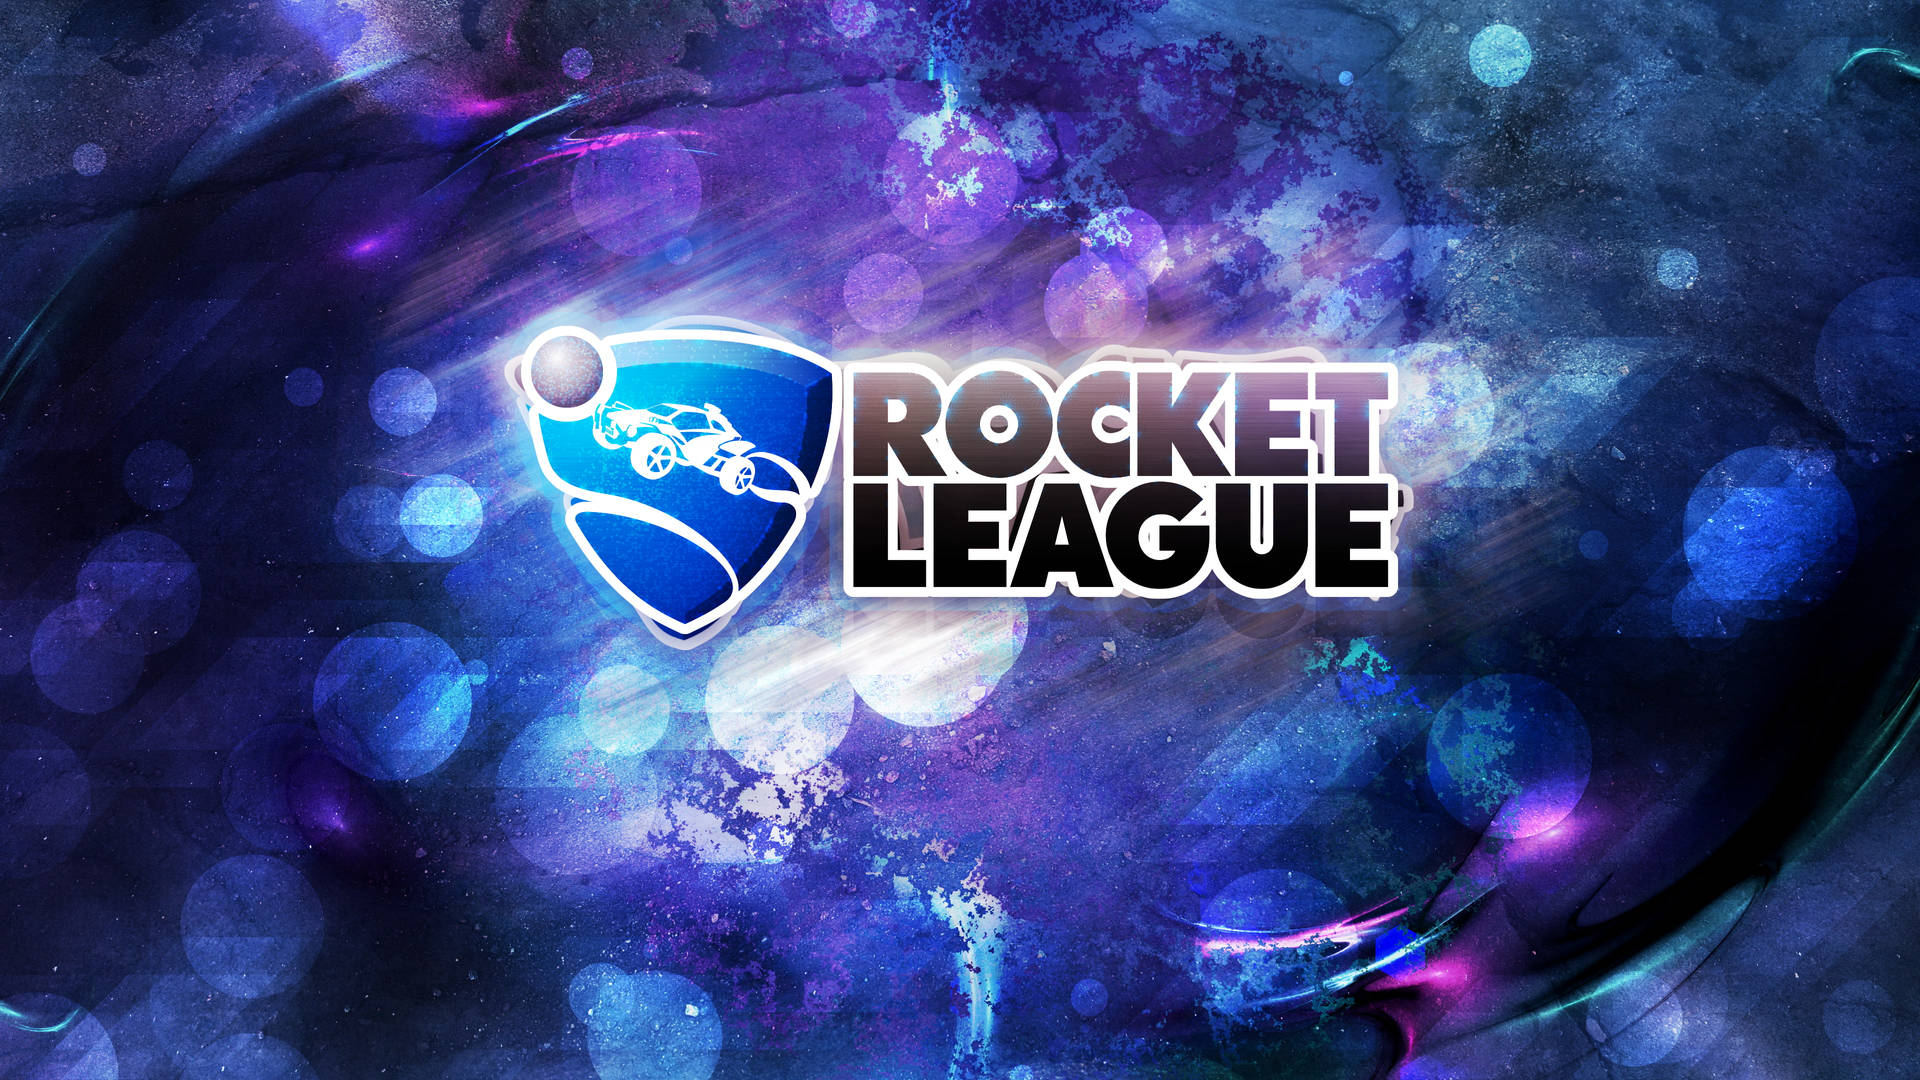 Rocket League Hd Logo Wallpaper